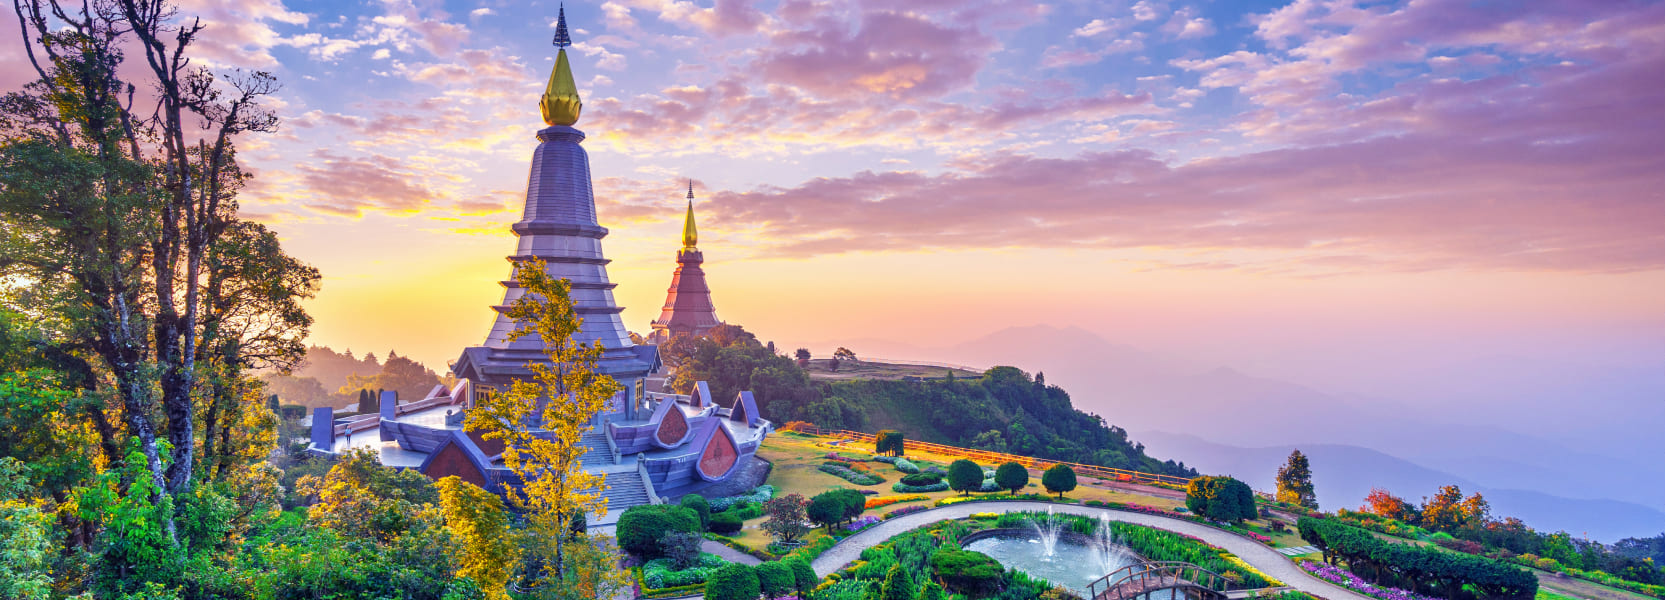 Vietnam tourist visa online